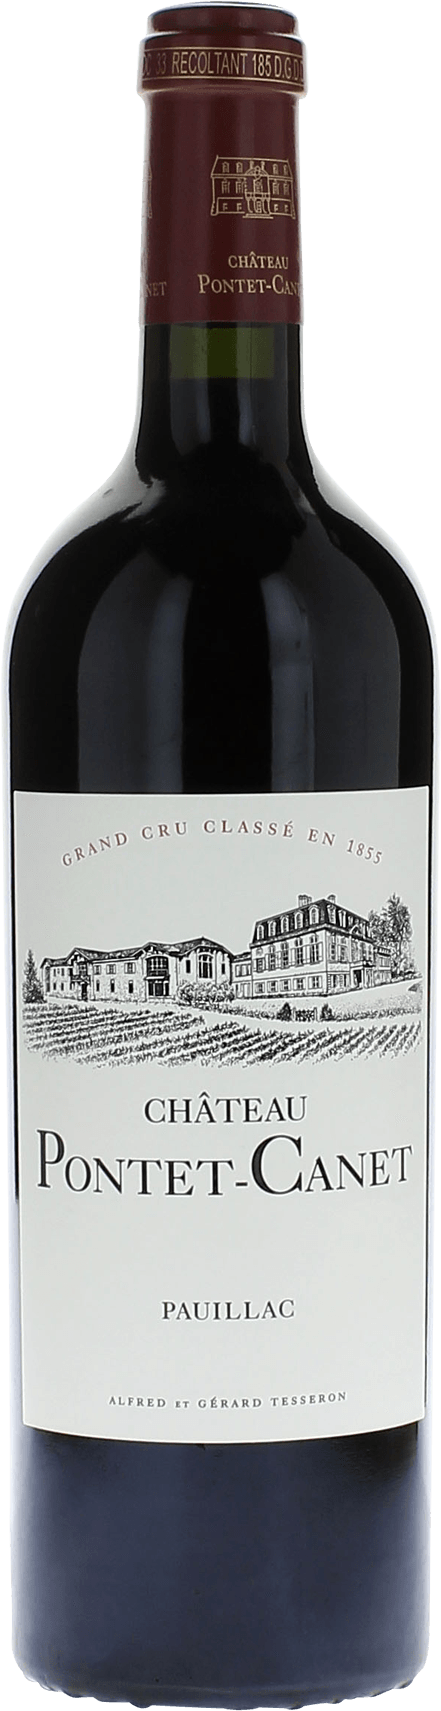 Pontet canet 2019 5me Grand cru class Pauillac, Bordeaux rouge